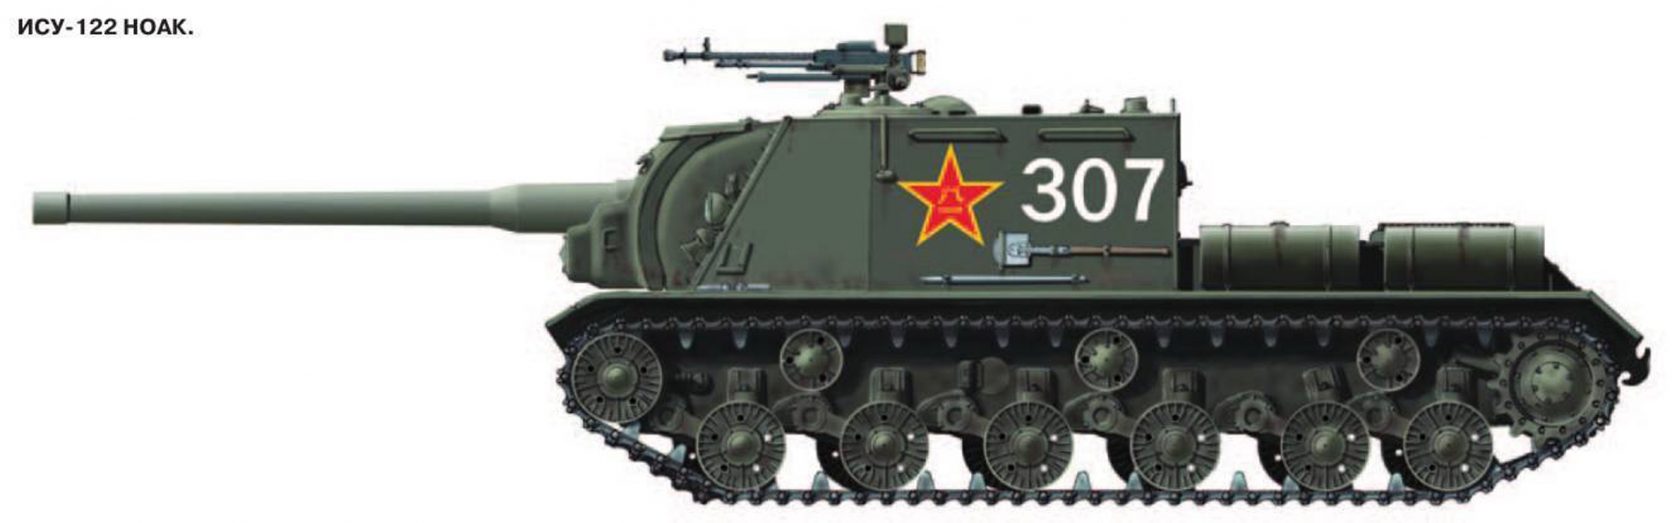 Ис 49. Танк ИСУ 122. Танк ИСУ 152 сбоку. ИСУ-122/152. ИСУ-122 вид сбоку.